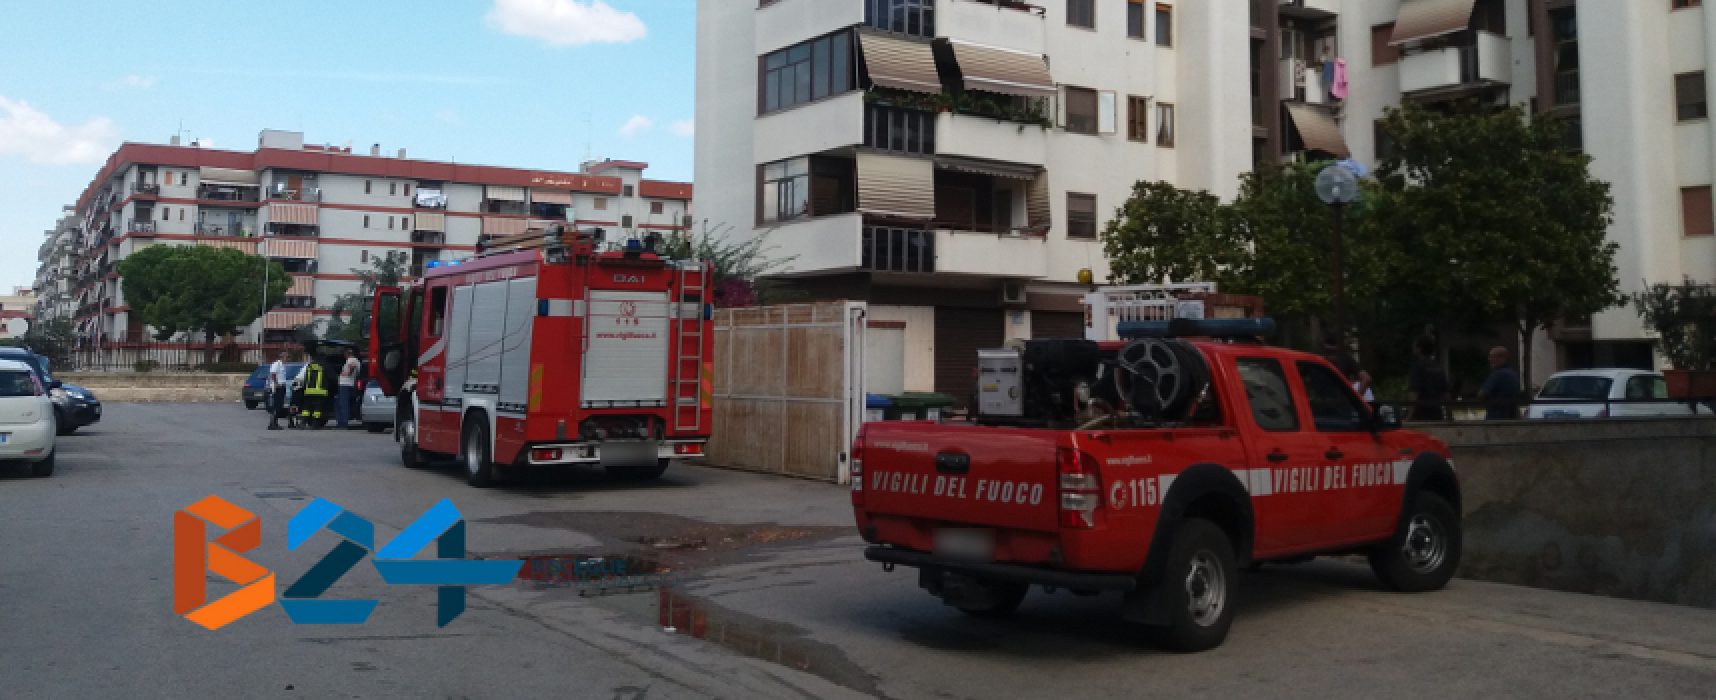 Fuga di gas nel quartiere Sant’Andrea, evacuati appartamenti